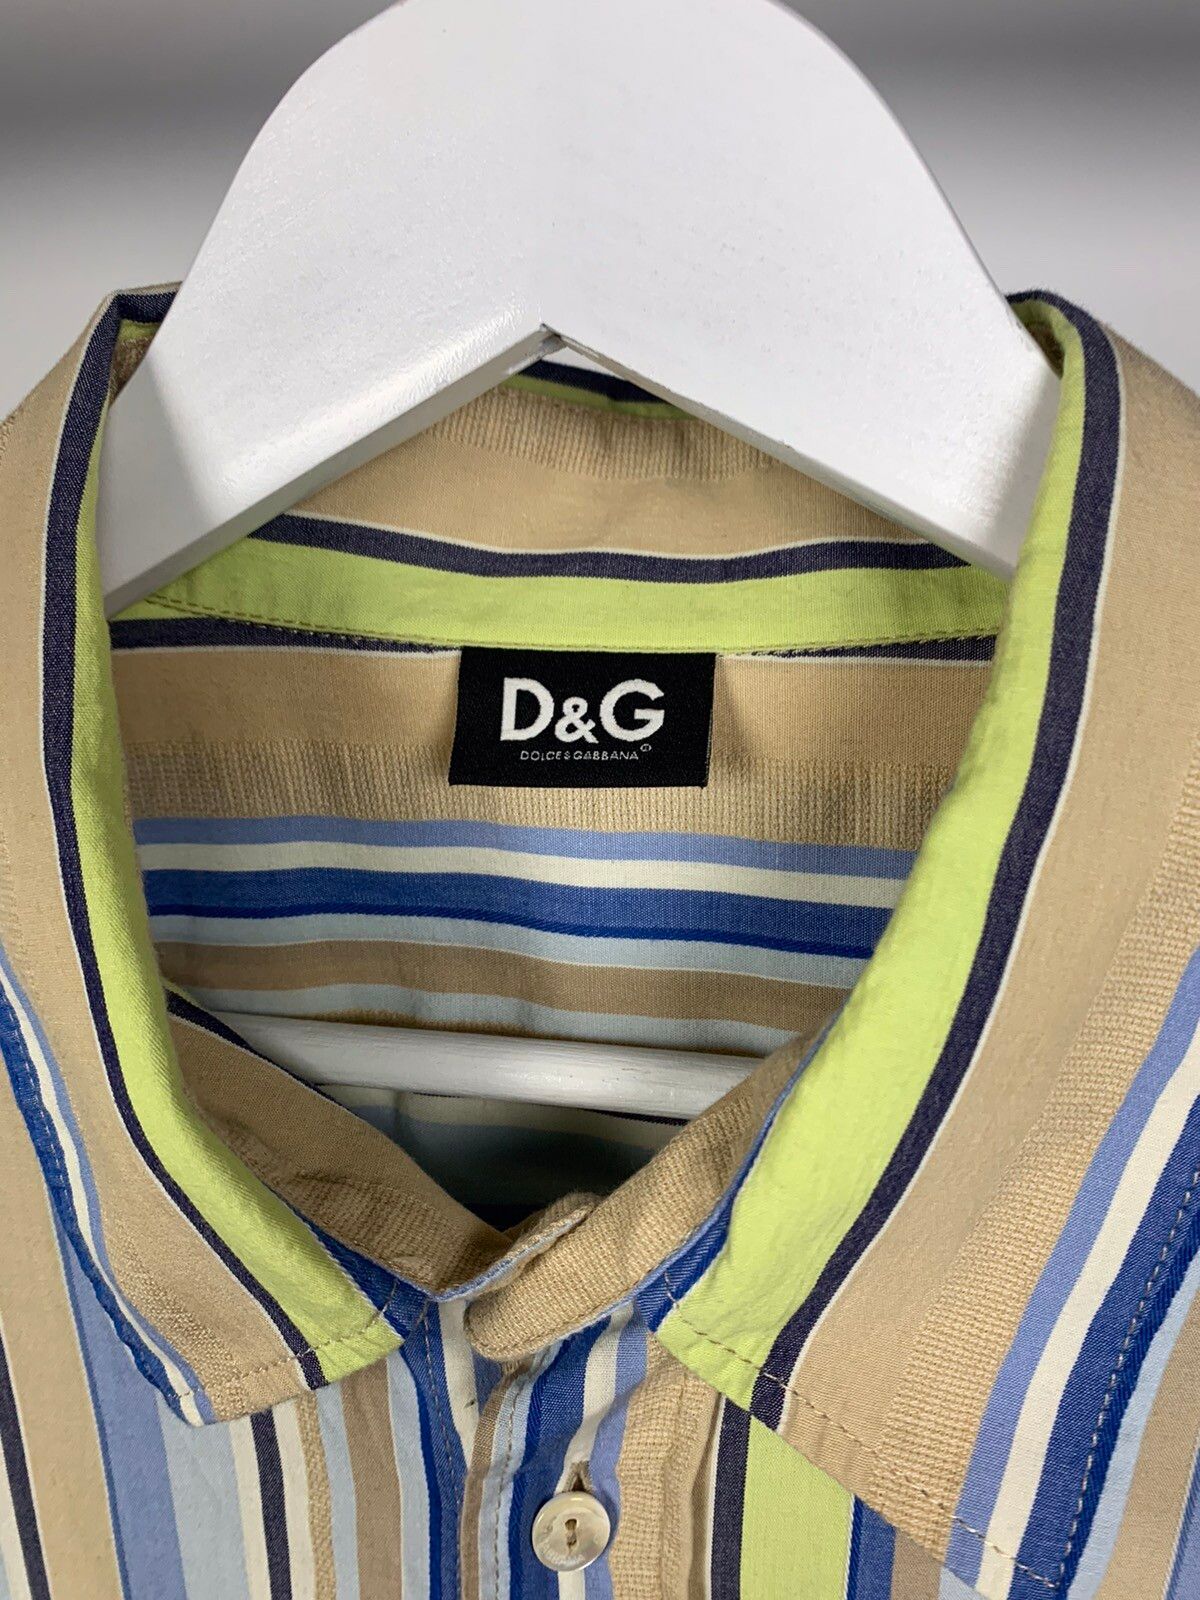 Dolce & Gabbana Dolce Gabbana D&G Buttons Up Short Sleeve Striped Lux Shirt Size XXL / US 16-18 / IT 52-54 - 11 Thumbnail